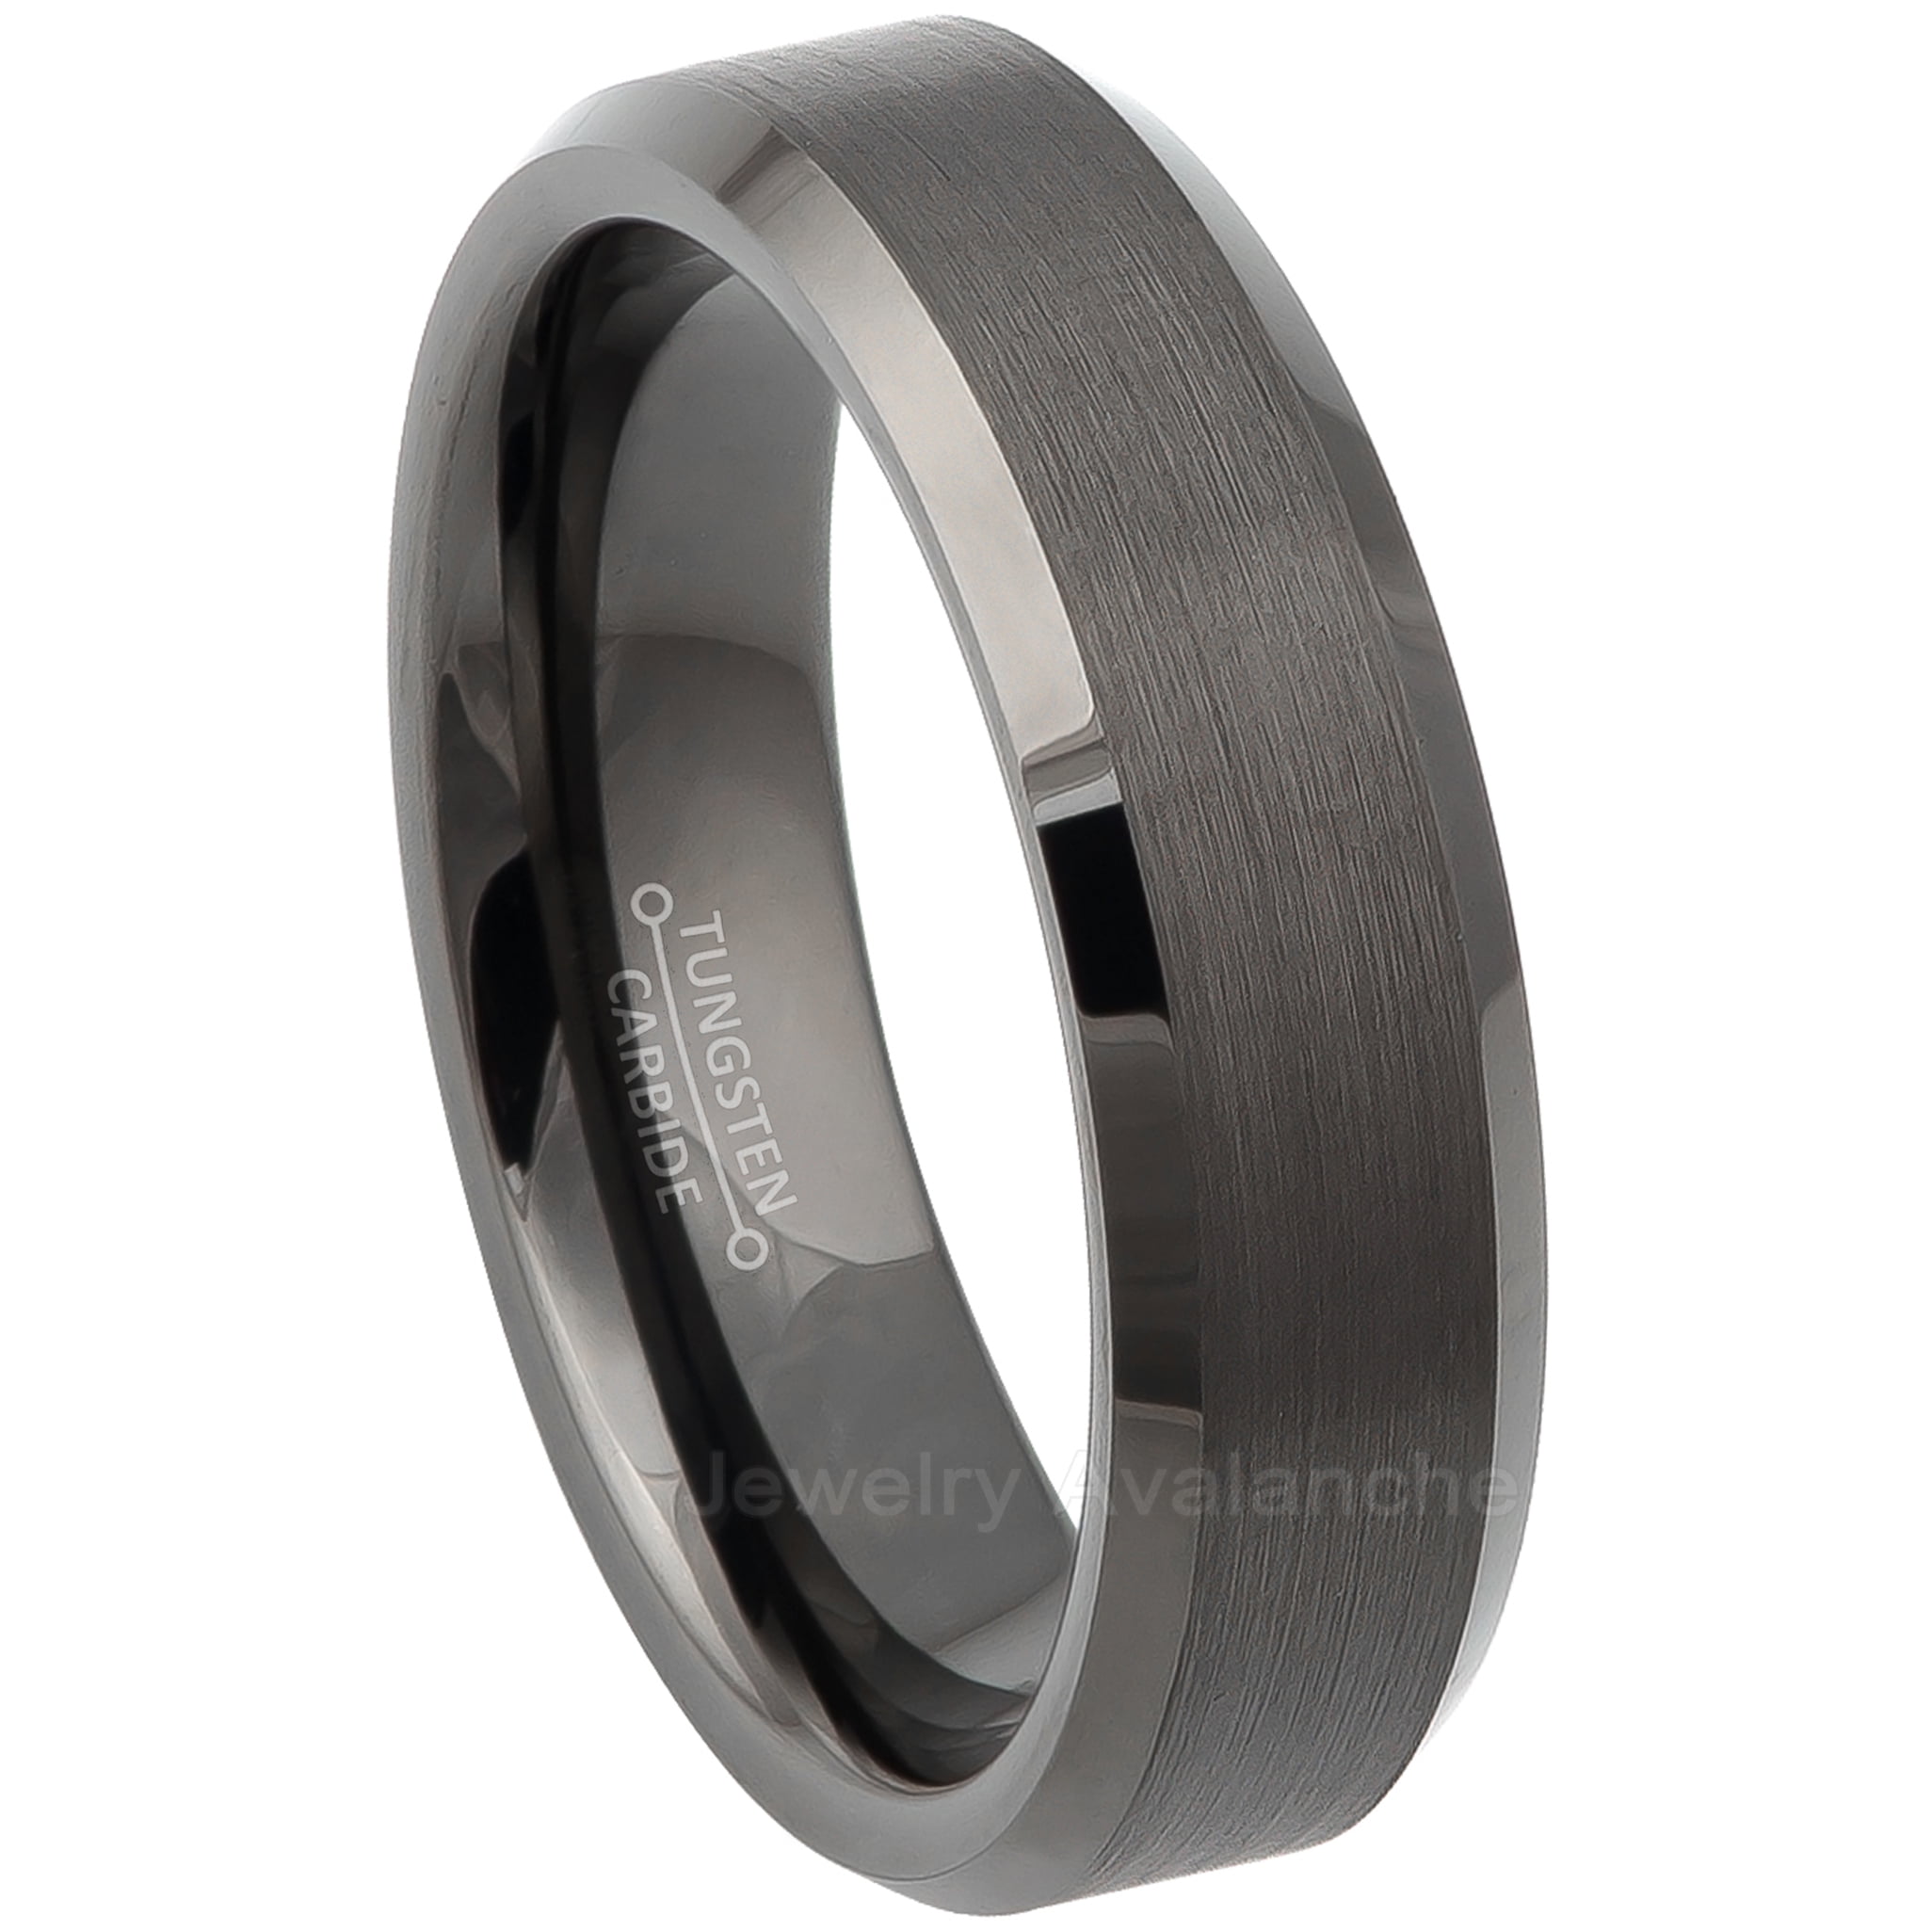 Tungsten Carbide Ring Men Women Wedding Band Beveled Edge Brushed Center 6mm 